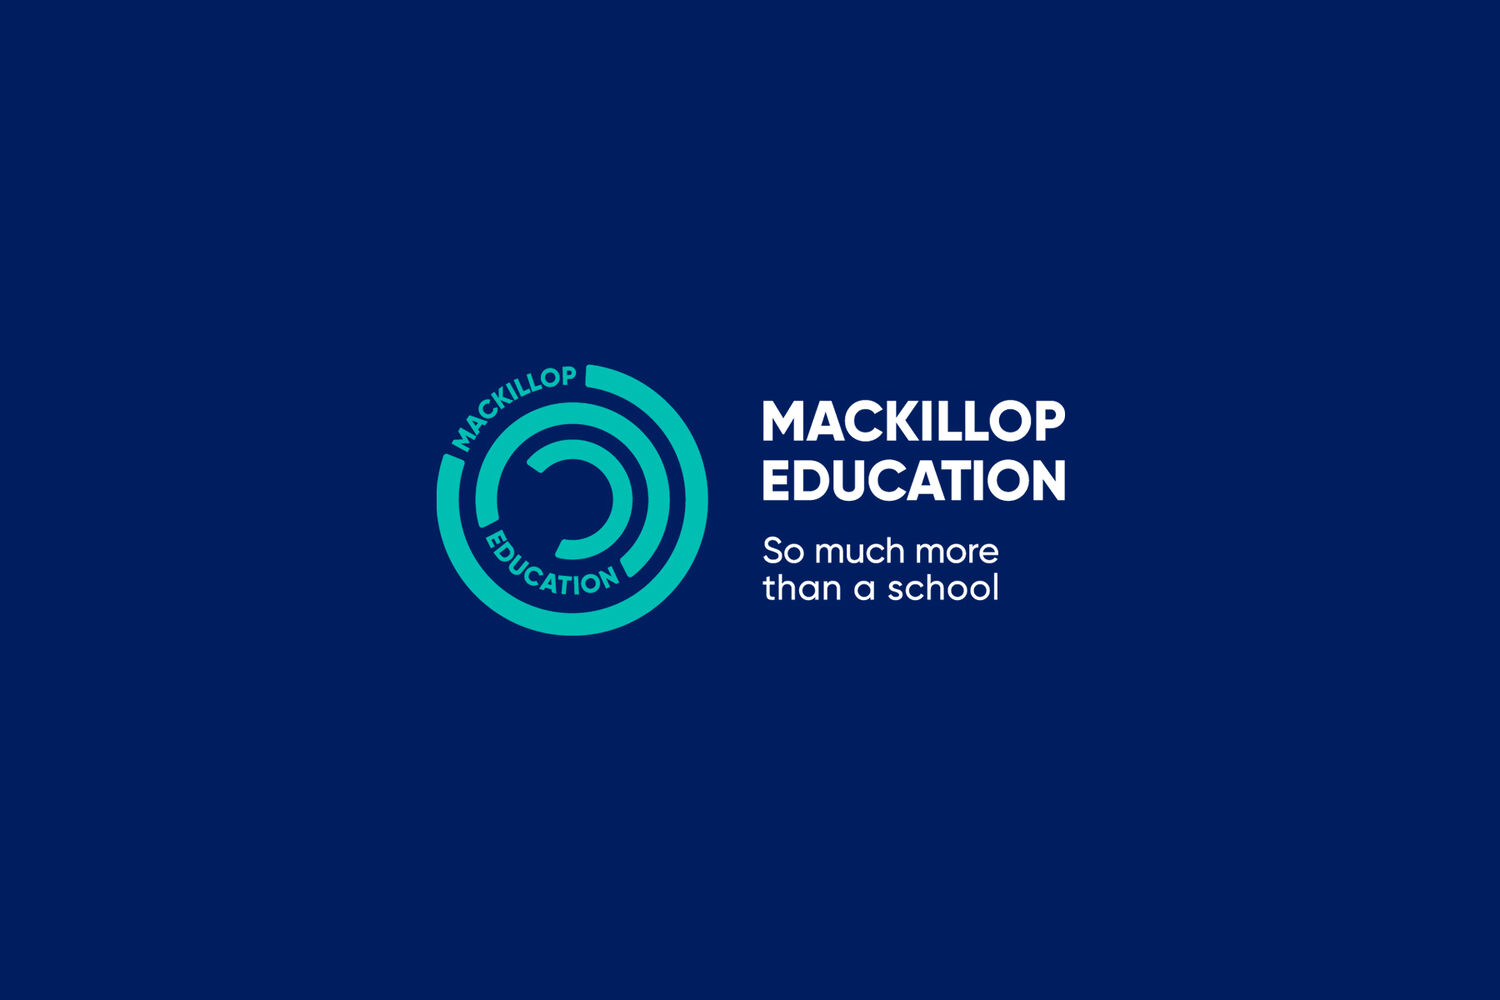 Mac Killop Education Logo And Banner